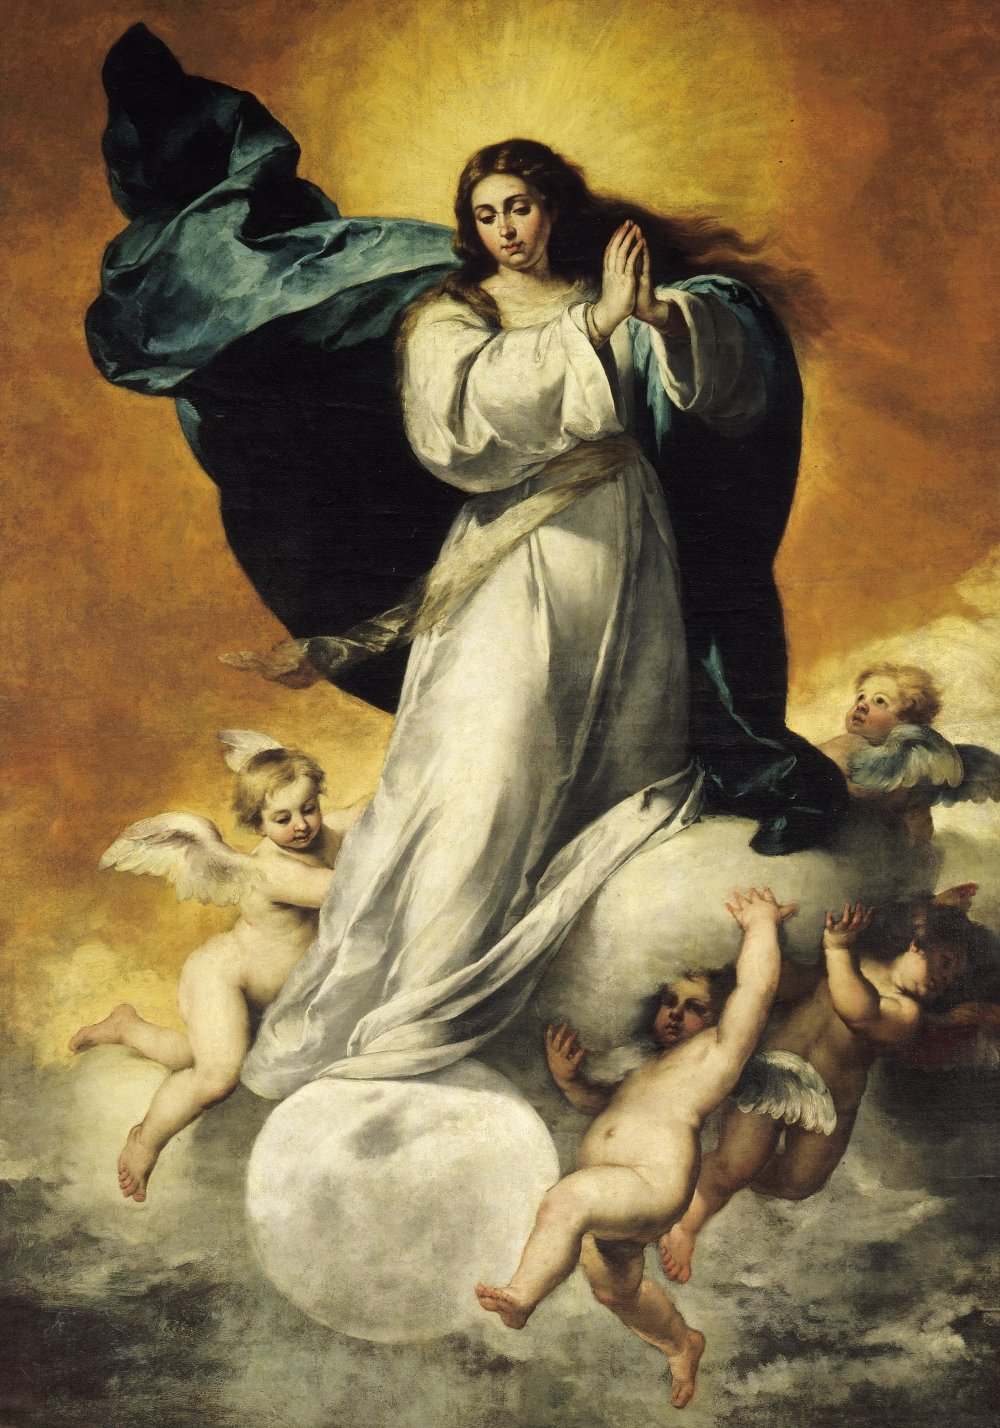 La asunción de la virgen se celebra el 15 de agosto.|Fuente: Wikimedia Commons